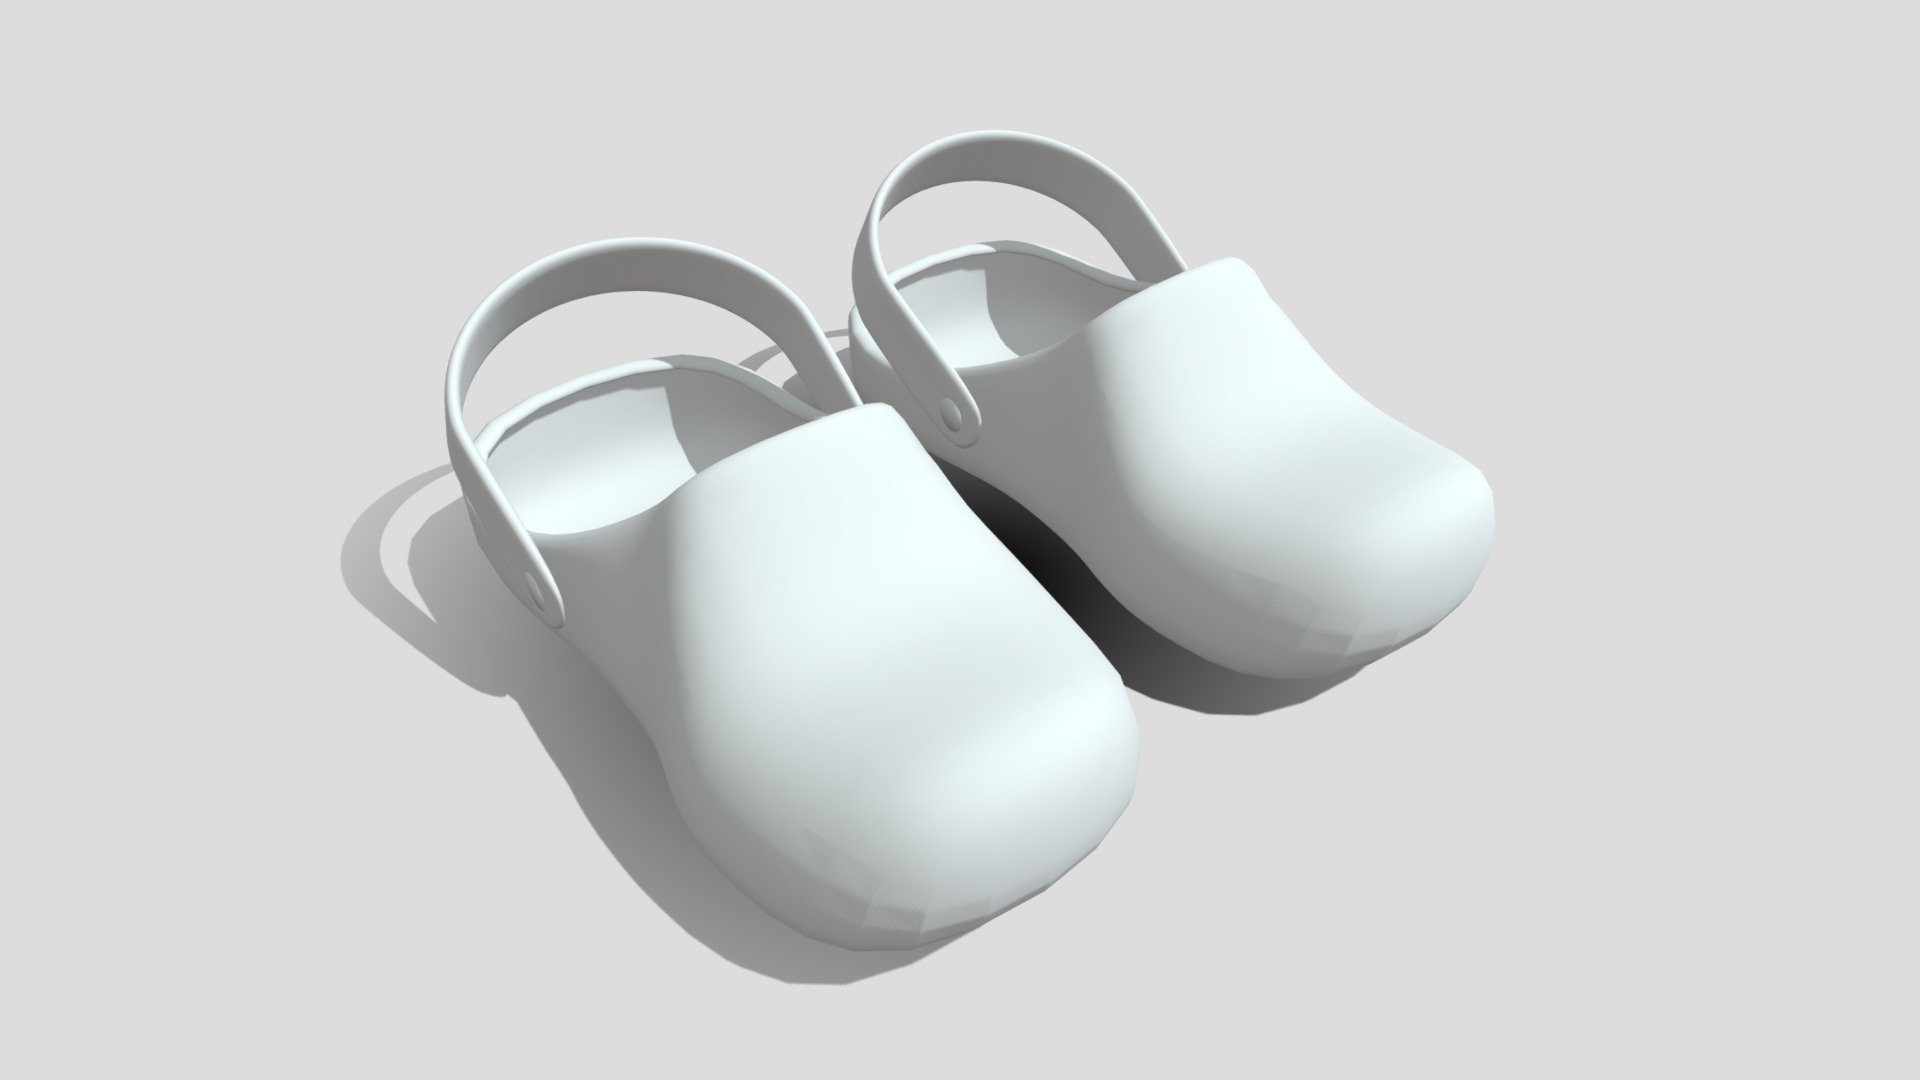 Crocs Echo Clog Sandals Shoes 3D Model in Clothing 3DExport